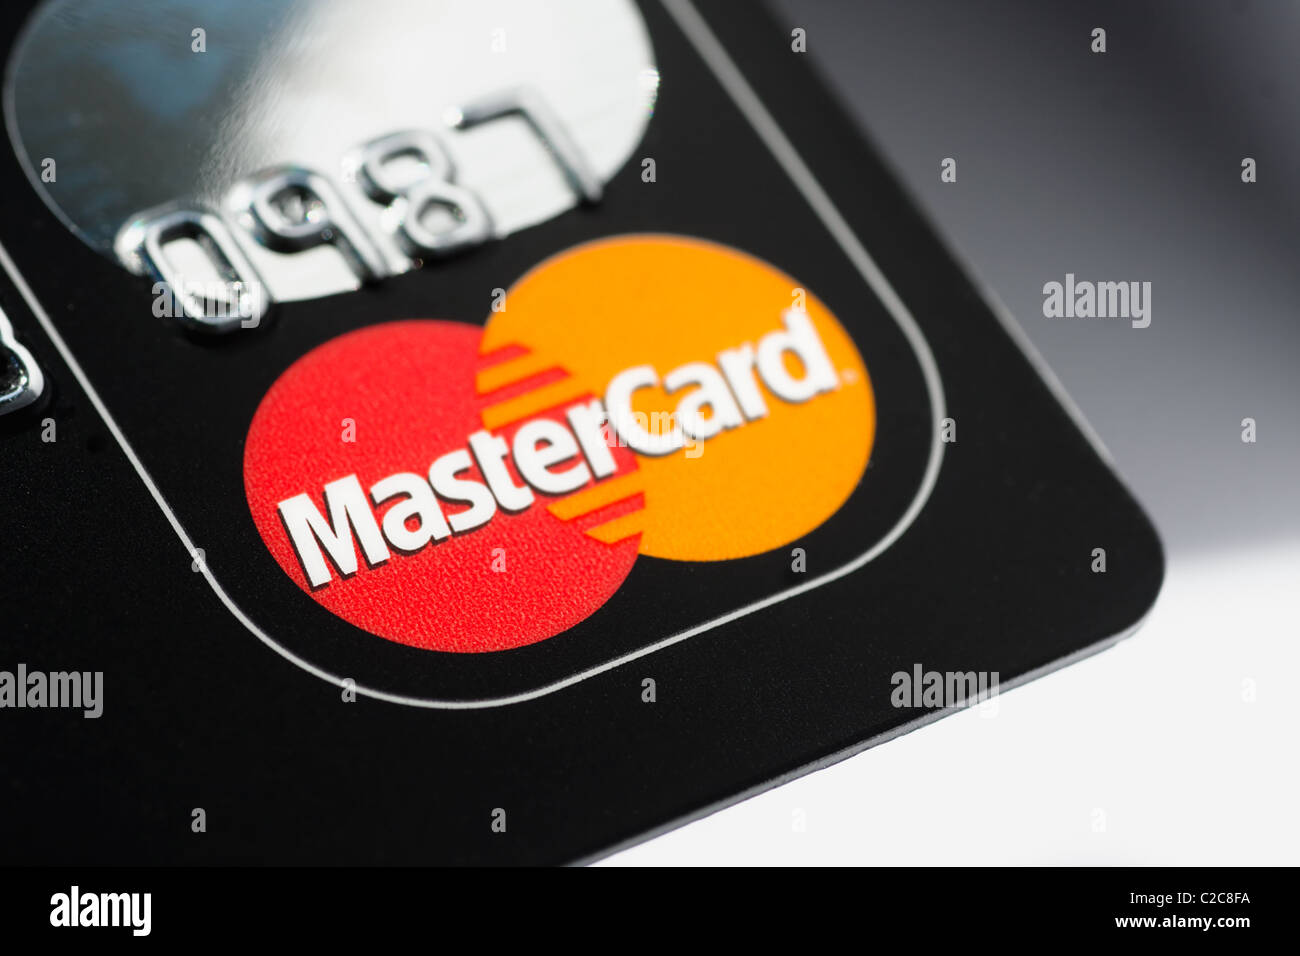 Eine Nahaufnahme Makroaufnahme einer Mastercard Kreditkarte. MasterCard ist eine der größten Kreditkarten-Unternehmen Stockfoto